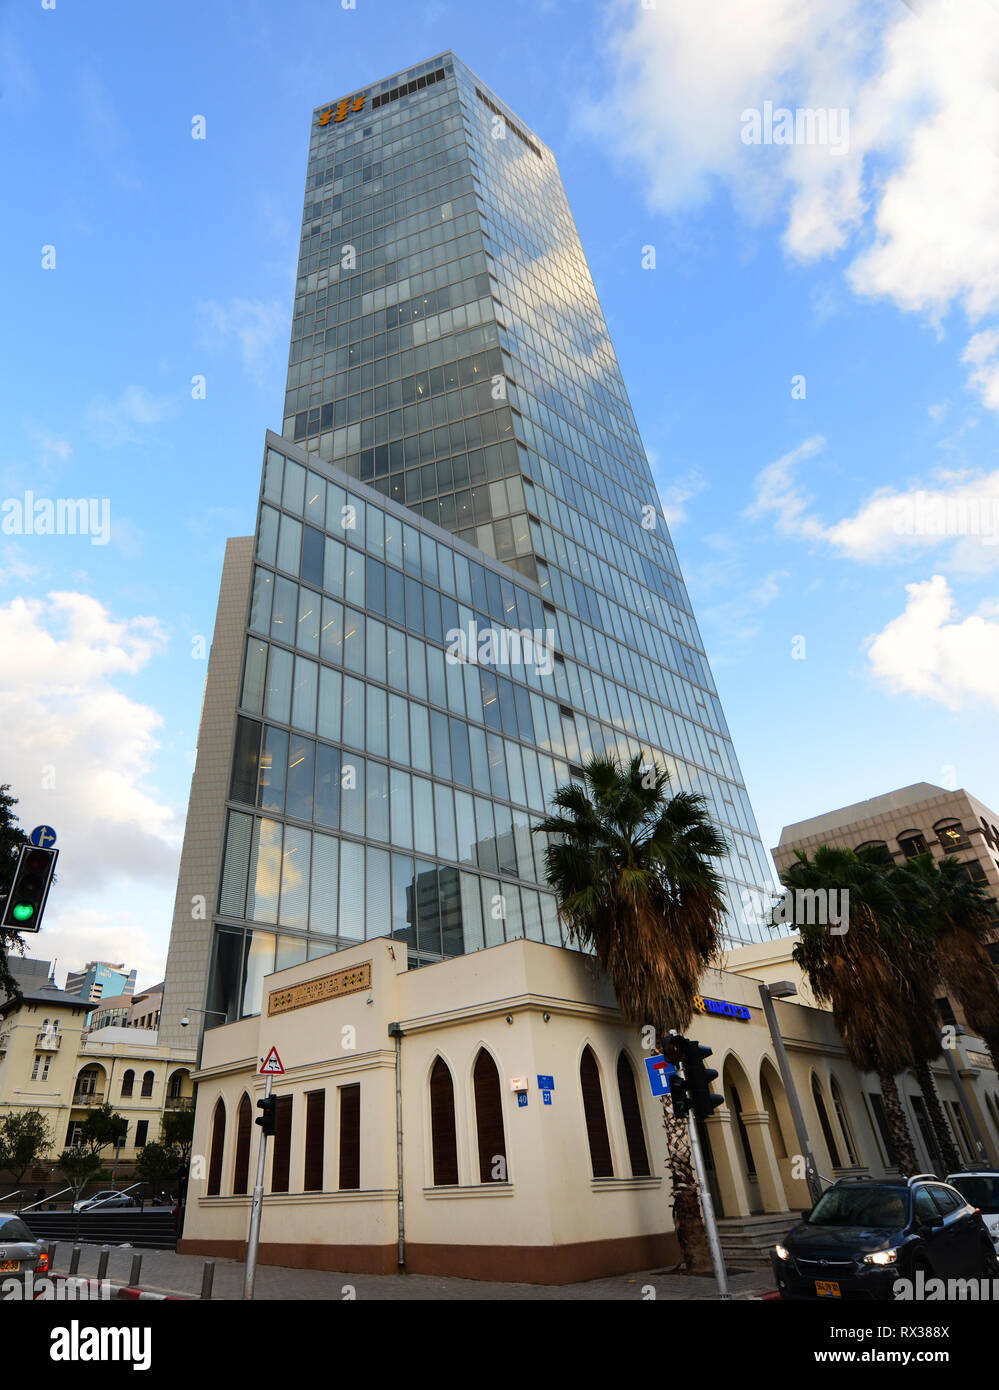 La banque Beinleumi à la fois dans un bâtiment historique et un gratte-ciel moderne. Tel-Aviv, Israël. Banque D'Images